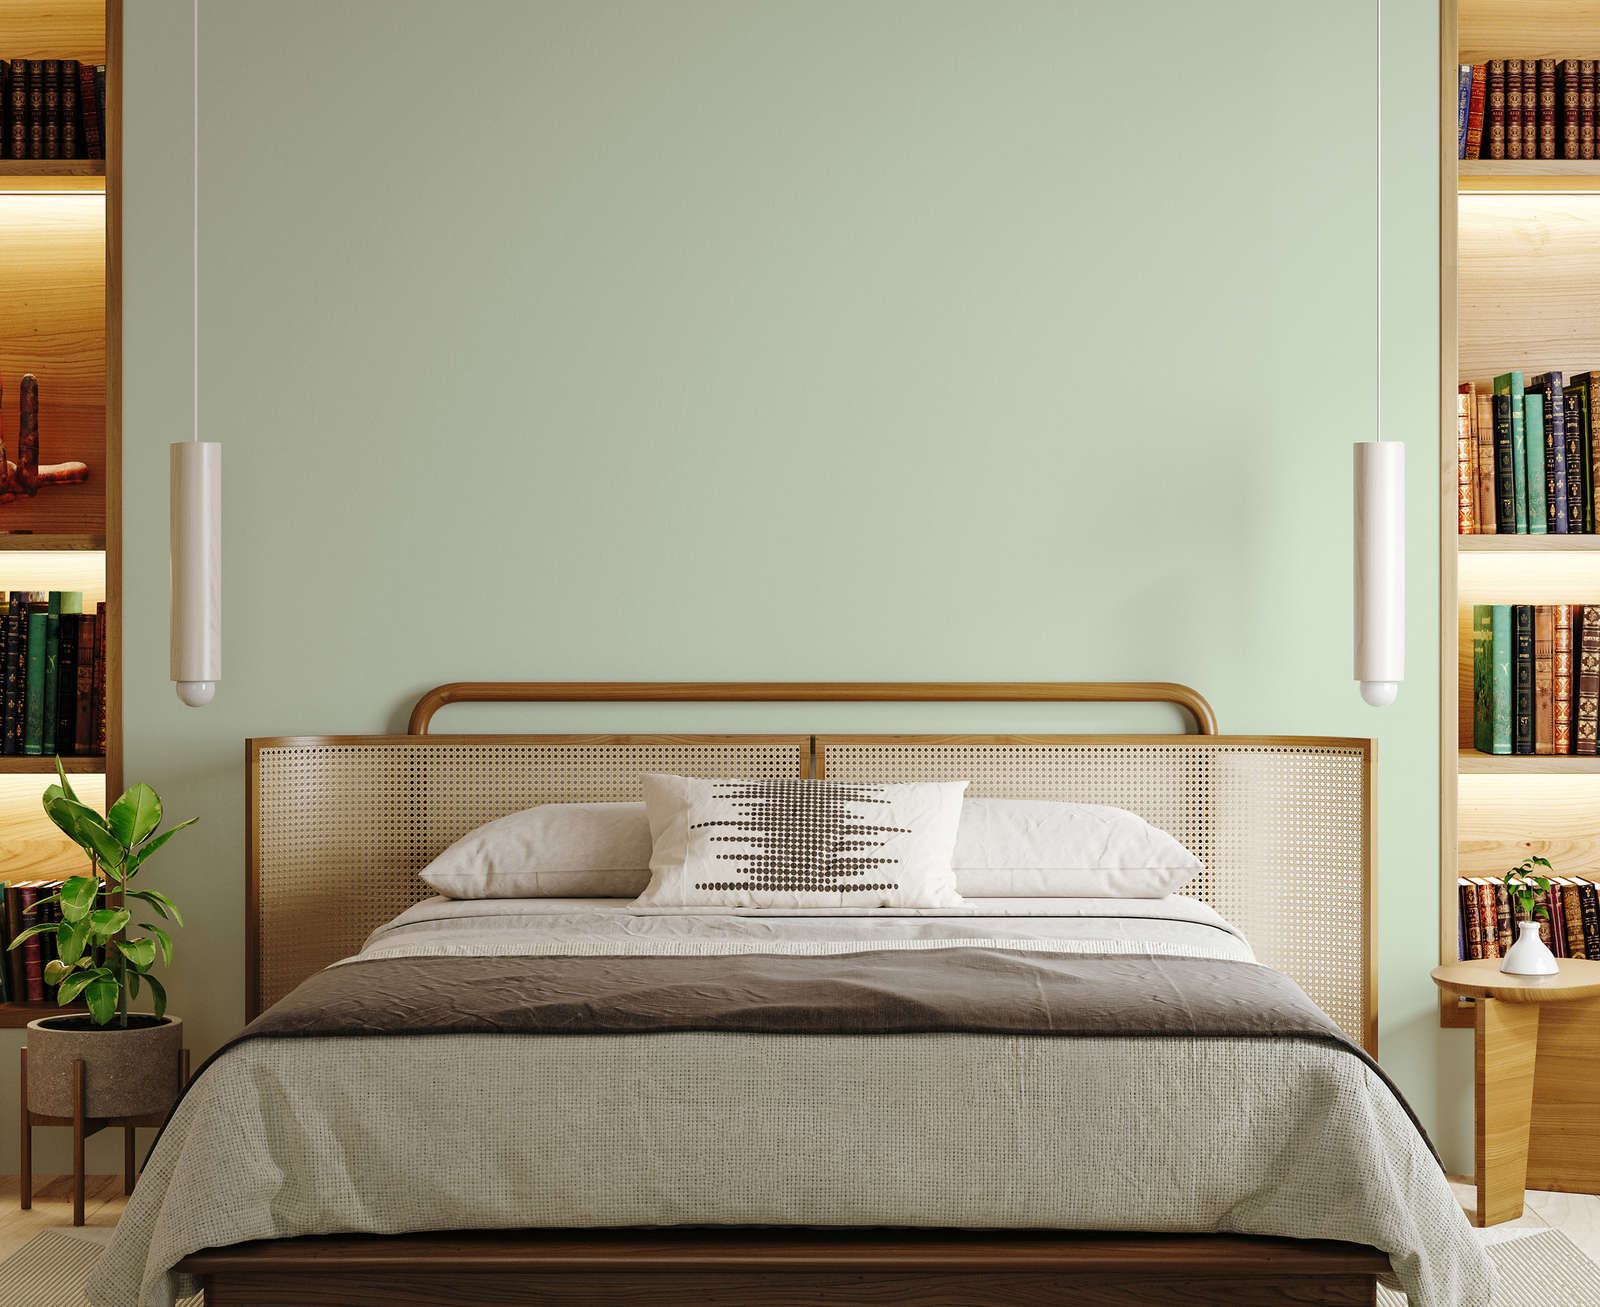             Premium Wall Paint Awakening Pastel Green »Sweet Sage« NW400 – 1 litre
        